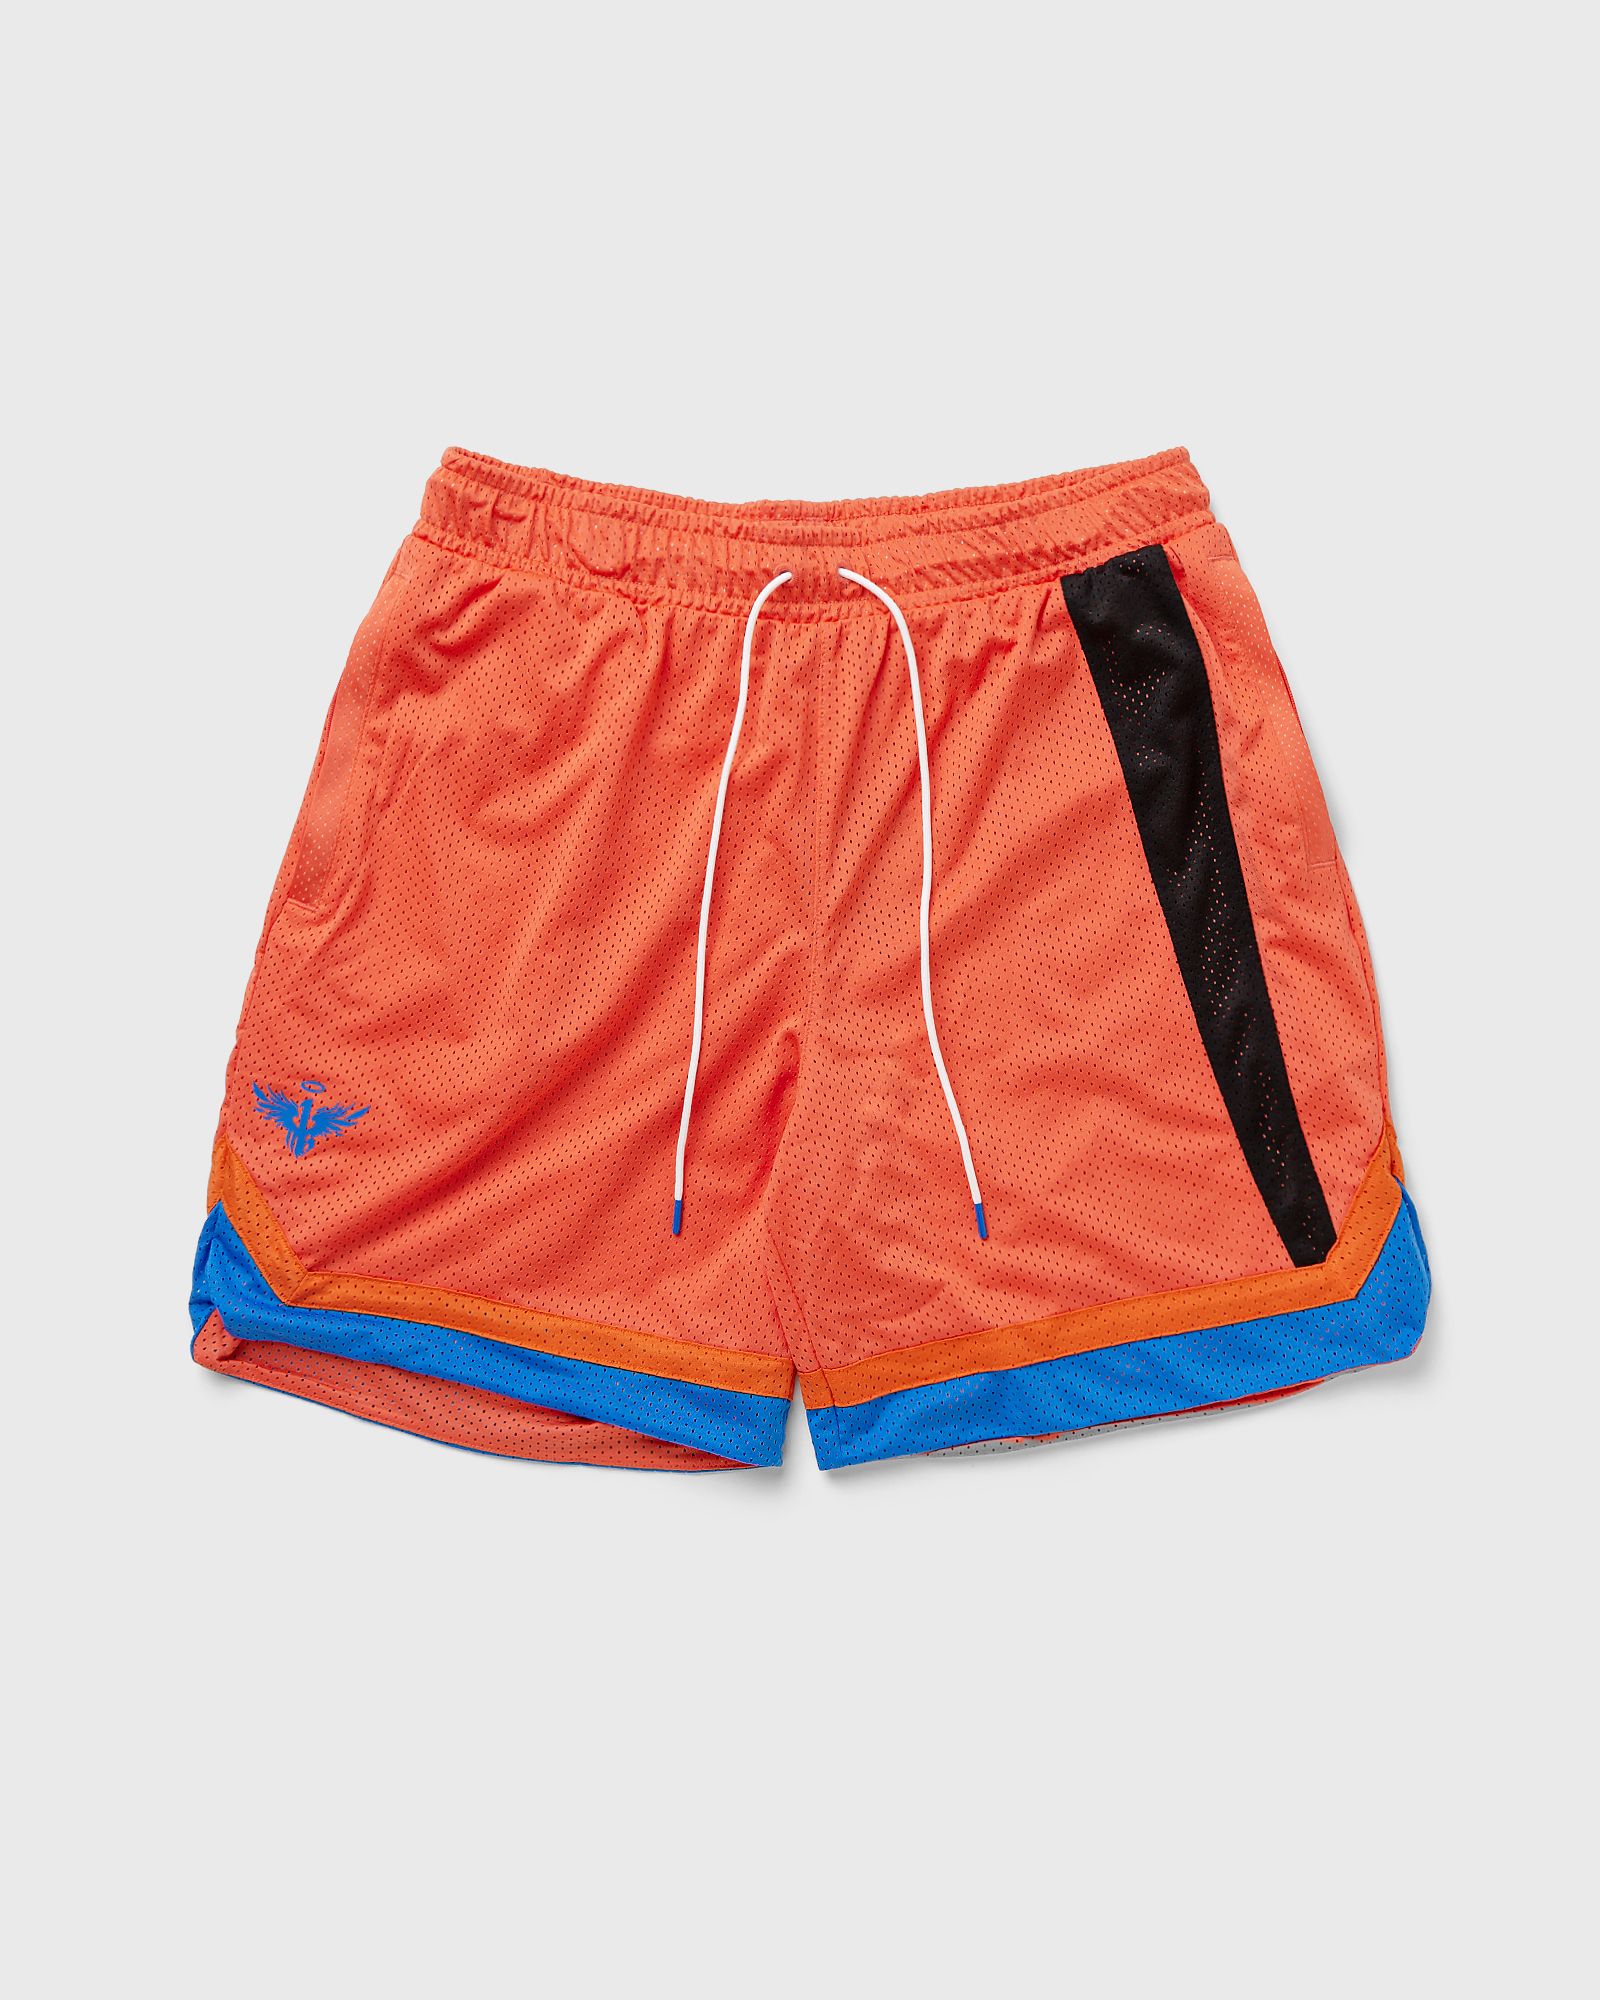 Puma - melo one stripe short men sport & team shorts orange in größe:l